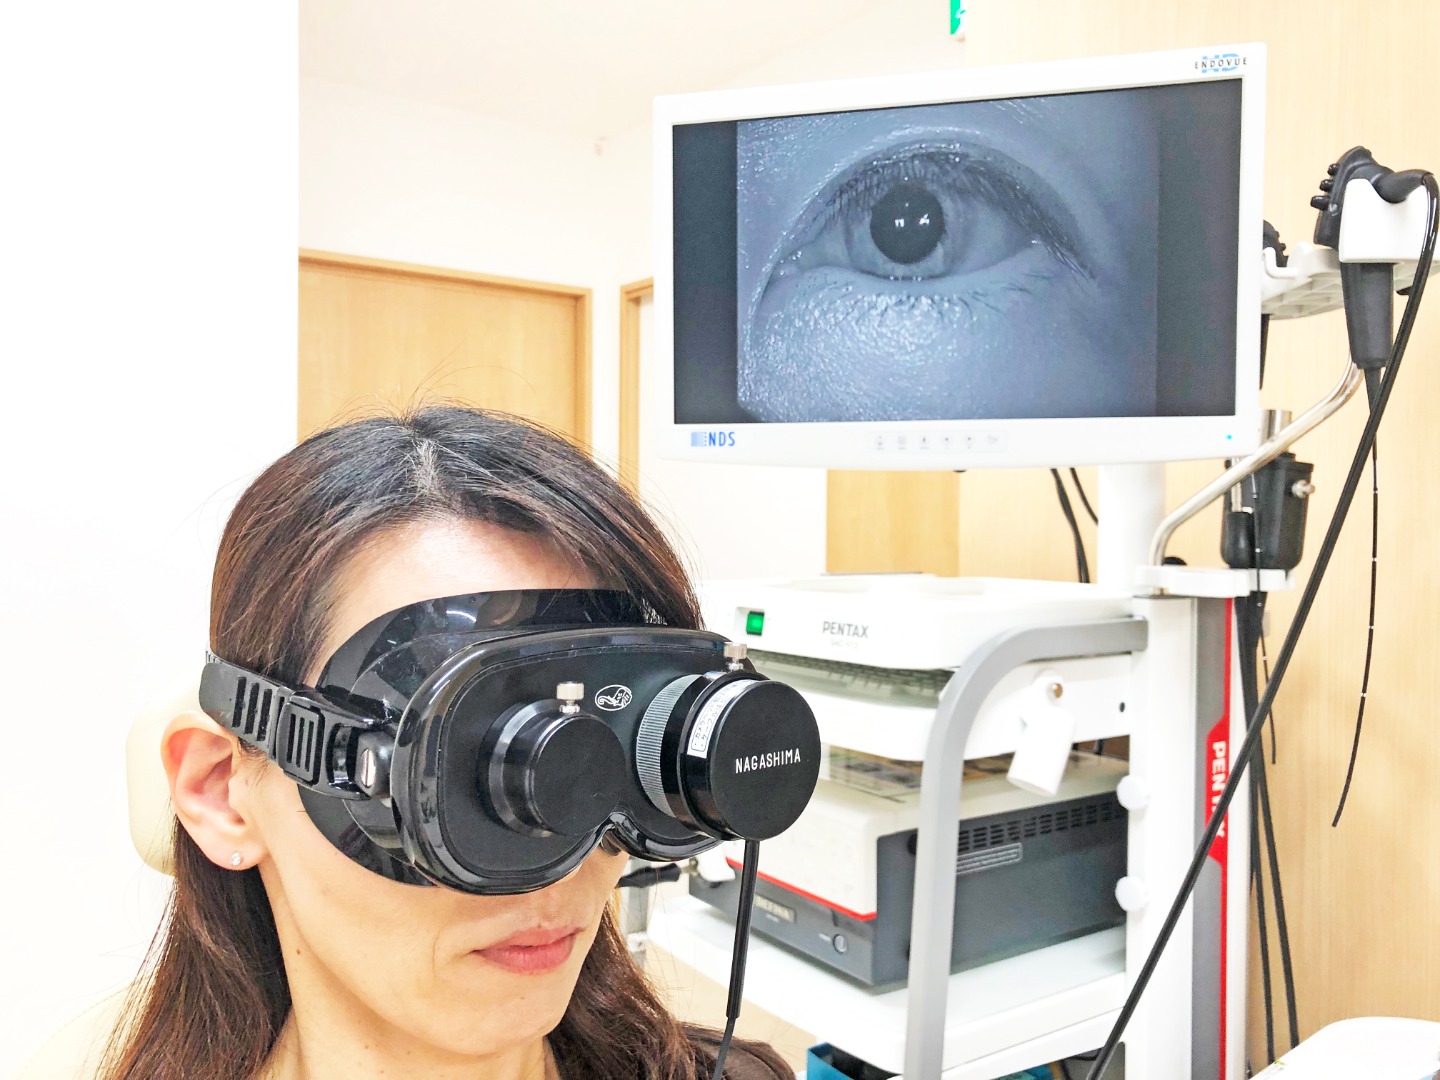 赤外線CCDカメラを用いた眼振検査